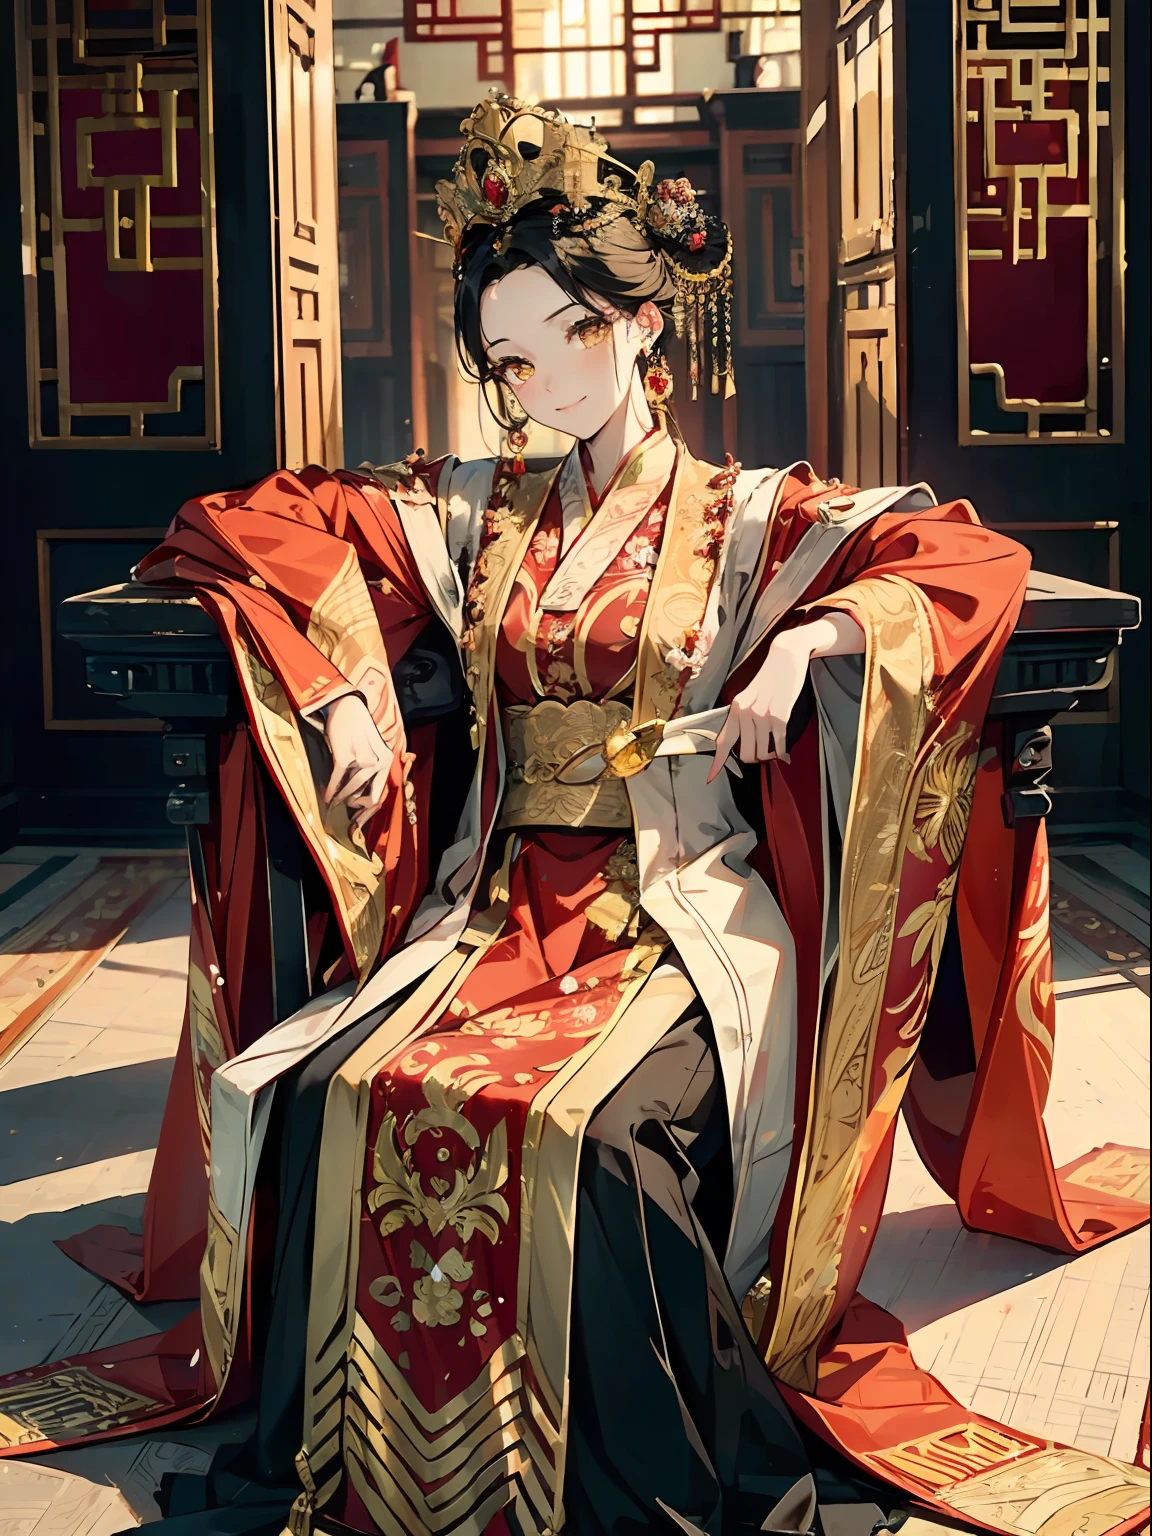 1 mulher，olhos amarelos，Vestido vermelho e dourado, hanfu ,roupas chinesas,tiara, coroa，((Cabelo preto enrolado))，Vista distante，Iluminação brilhante，brinco de ouro，sorria，sente-se em uma cadeira，um cenário de：Antigo palácio real chinês，